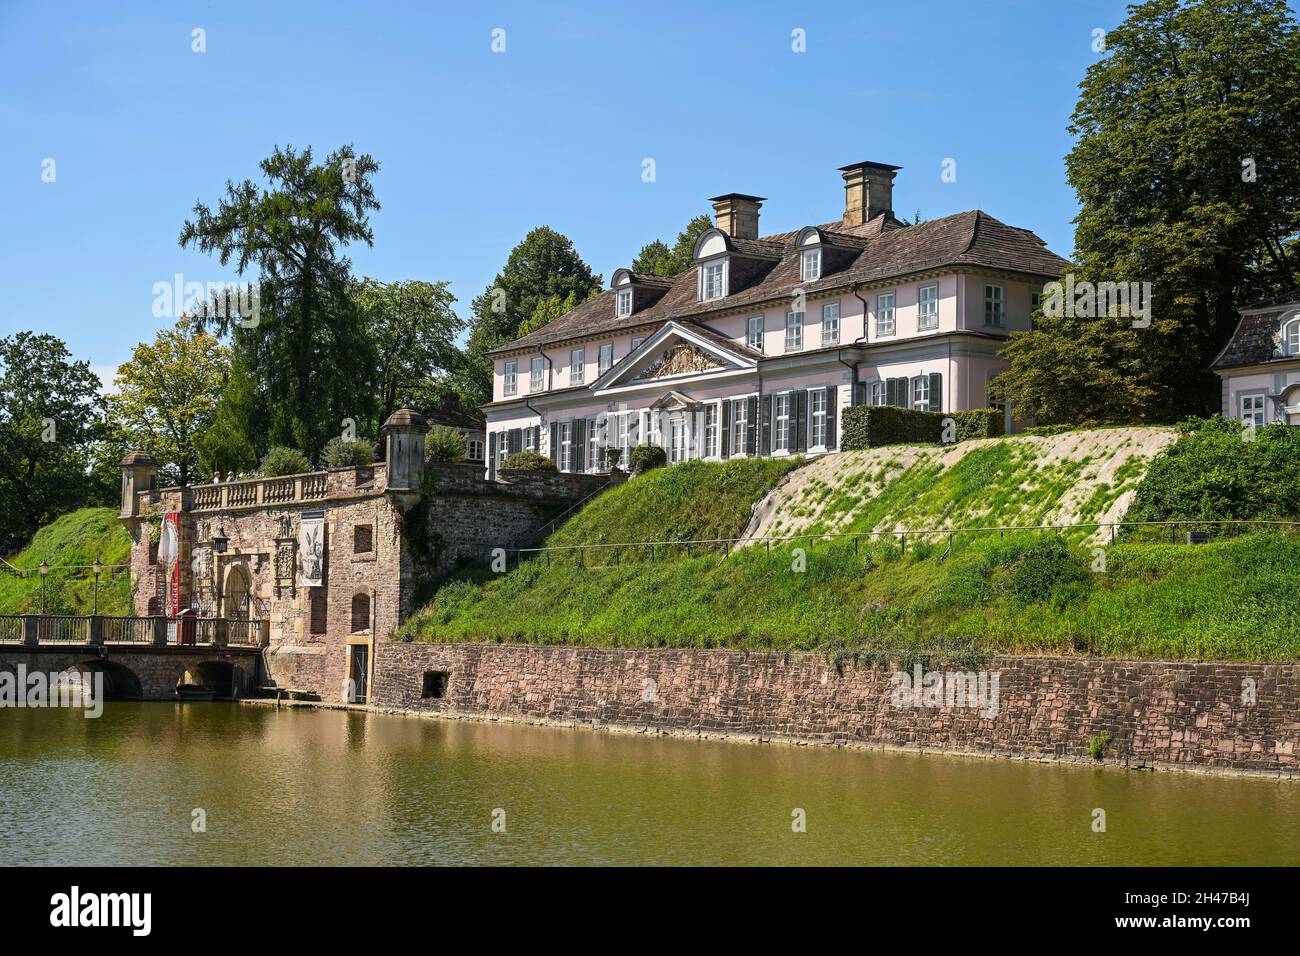 Wallanlage, Wassergraben, Pyrmonter Schloss, Bad Pyrmont, Niedersachsen, Deutschland Stock Photo